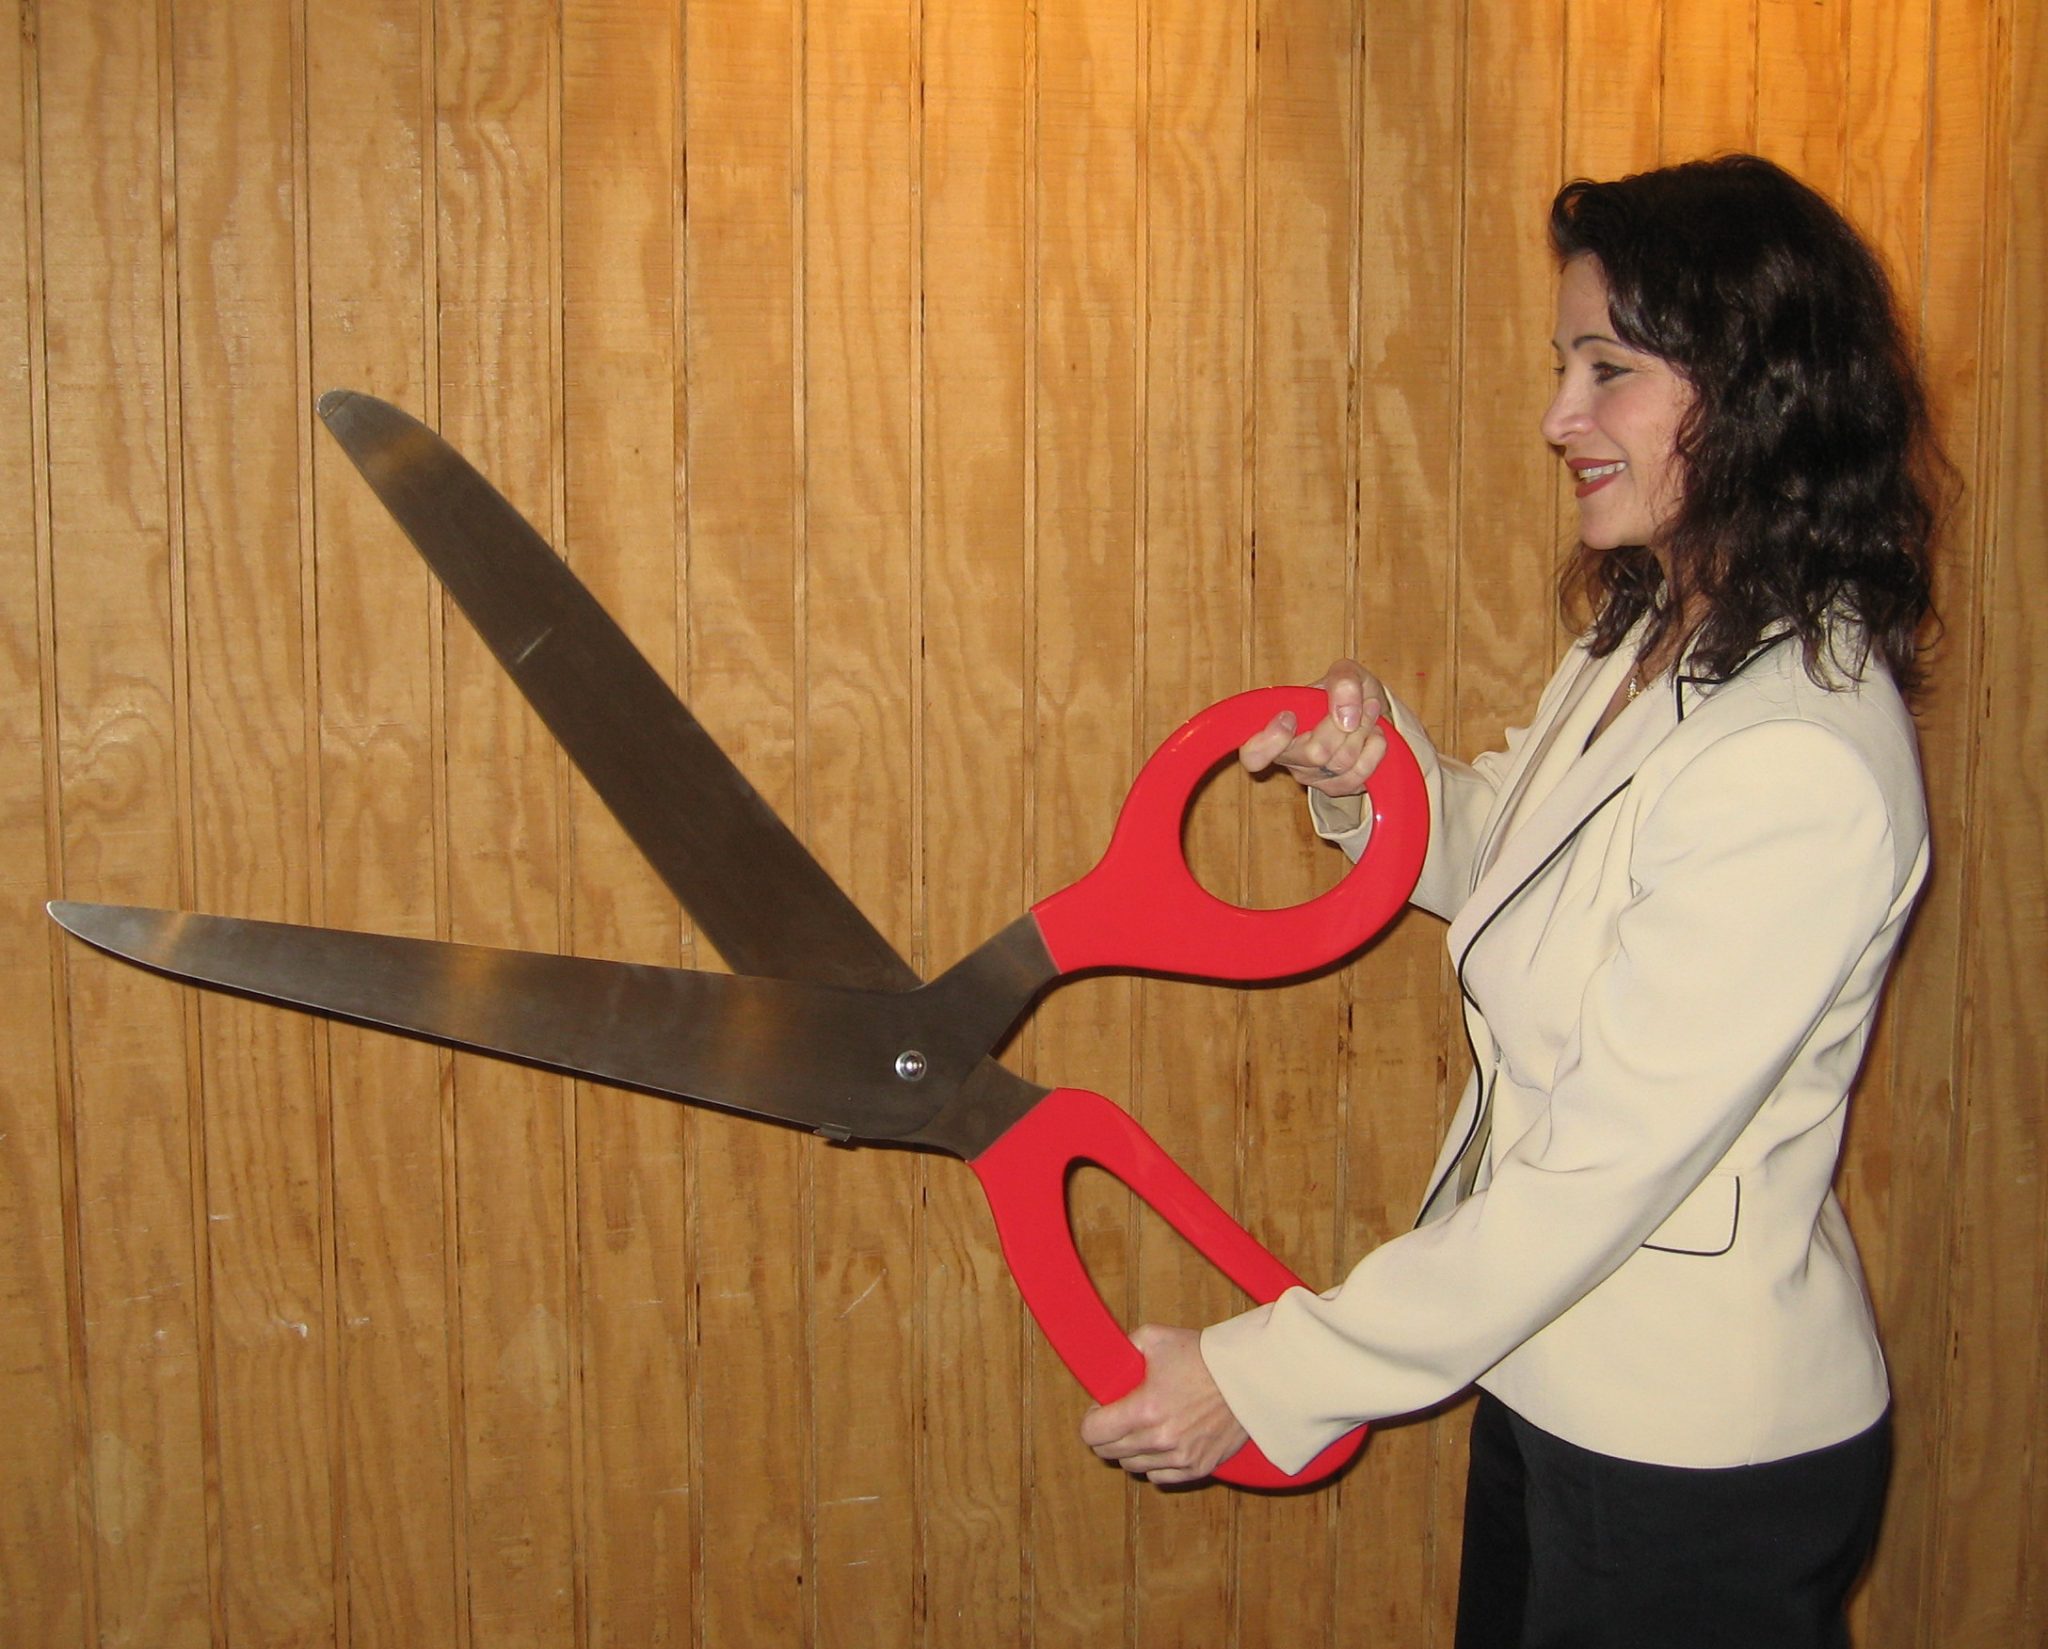 Large ceremonial scissor rentals in Atlanta Georgia